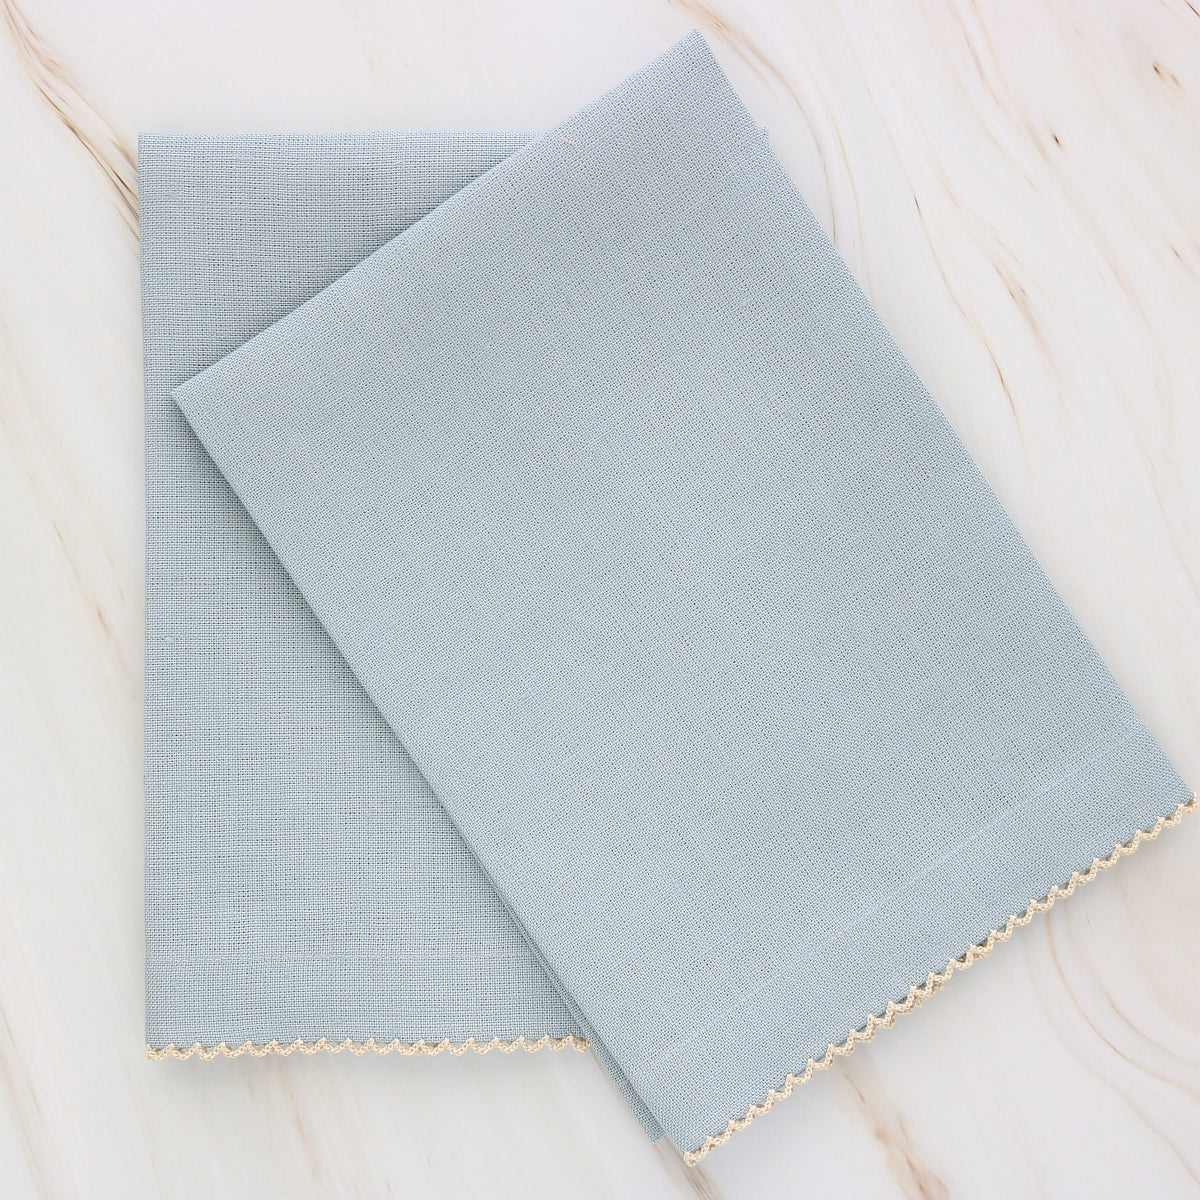 Ciel Blue linen guest towels with Flaxon natural edge picot trim